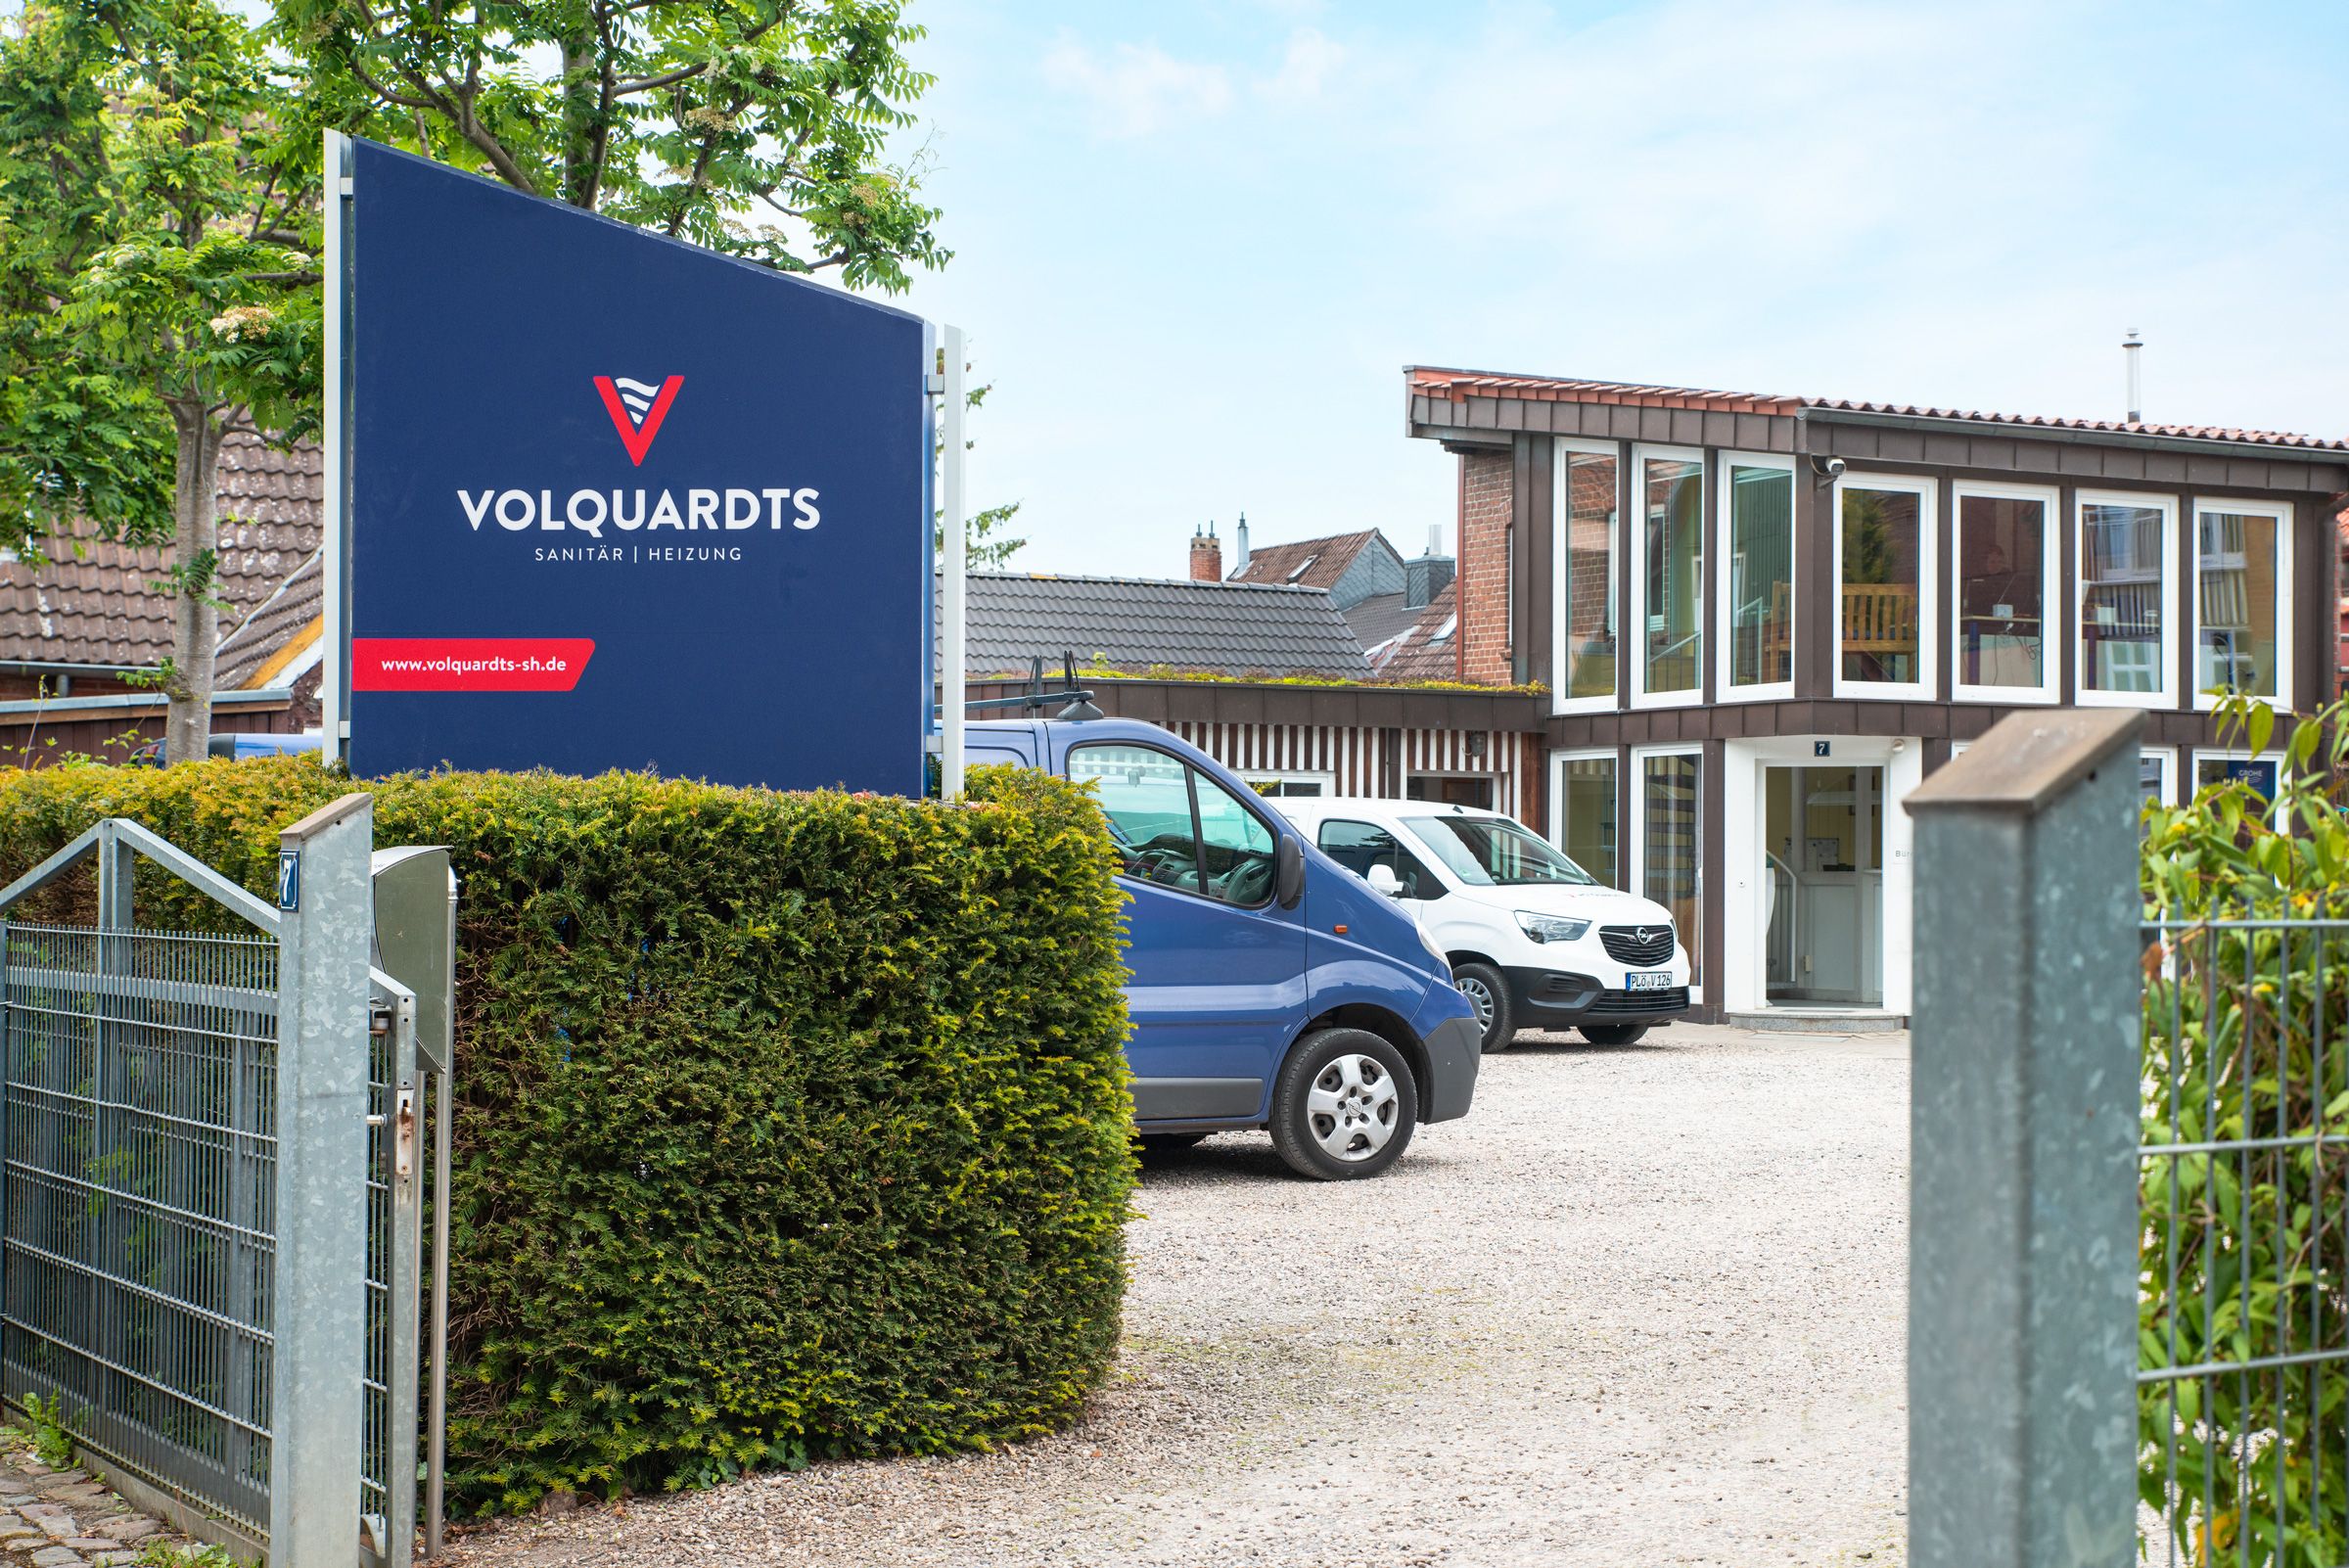 Peter Volquardts GmbH